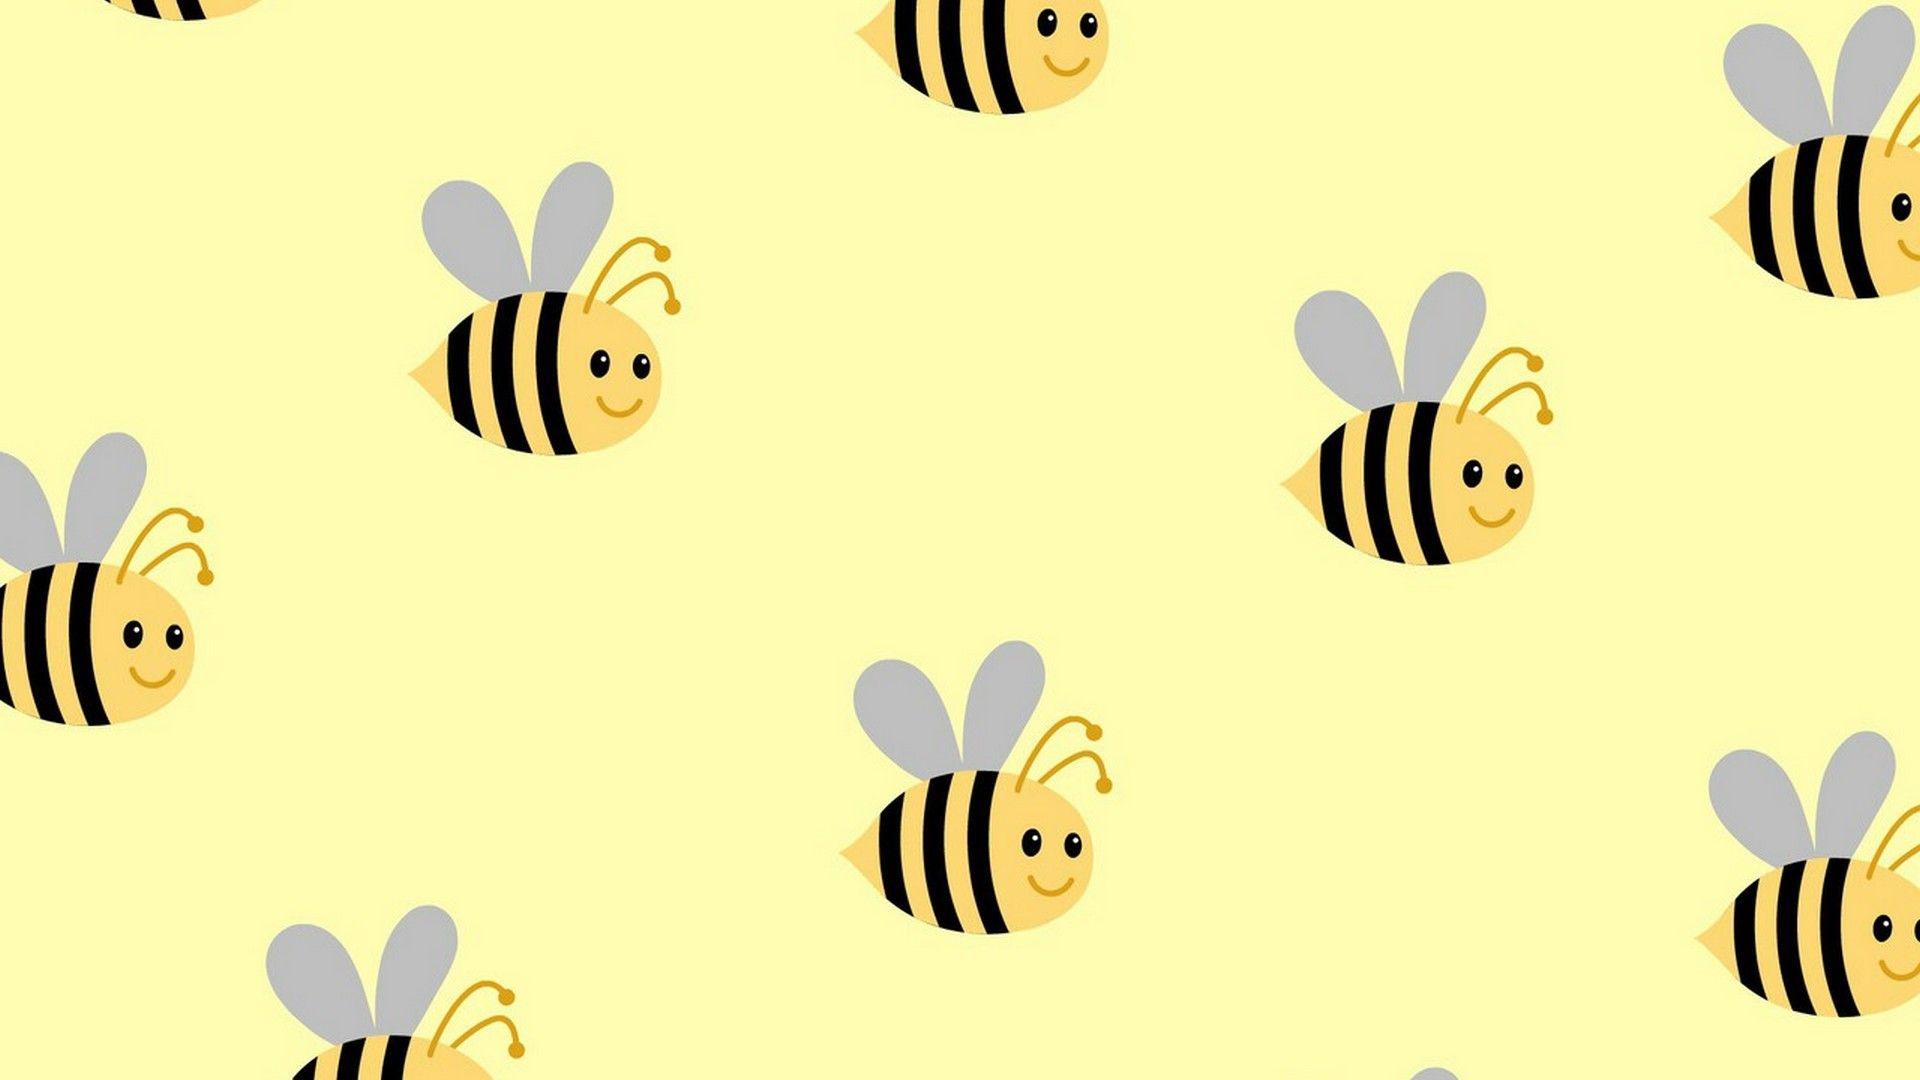 81874 Bee Wallpaper Images Stock Photos  Vectors  Shutterstock